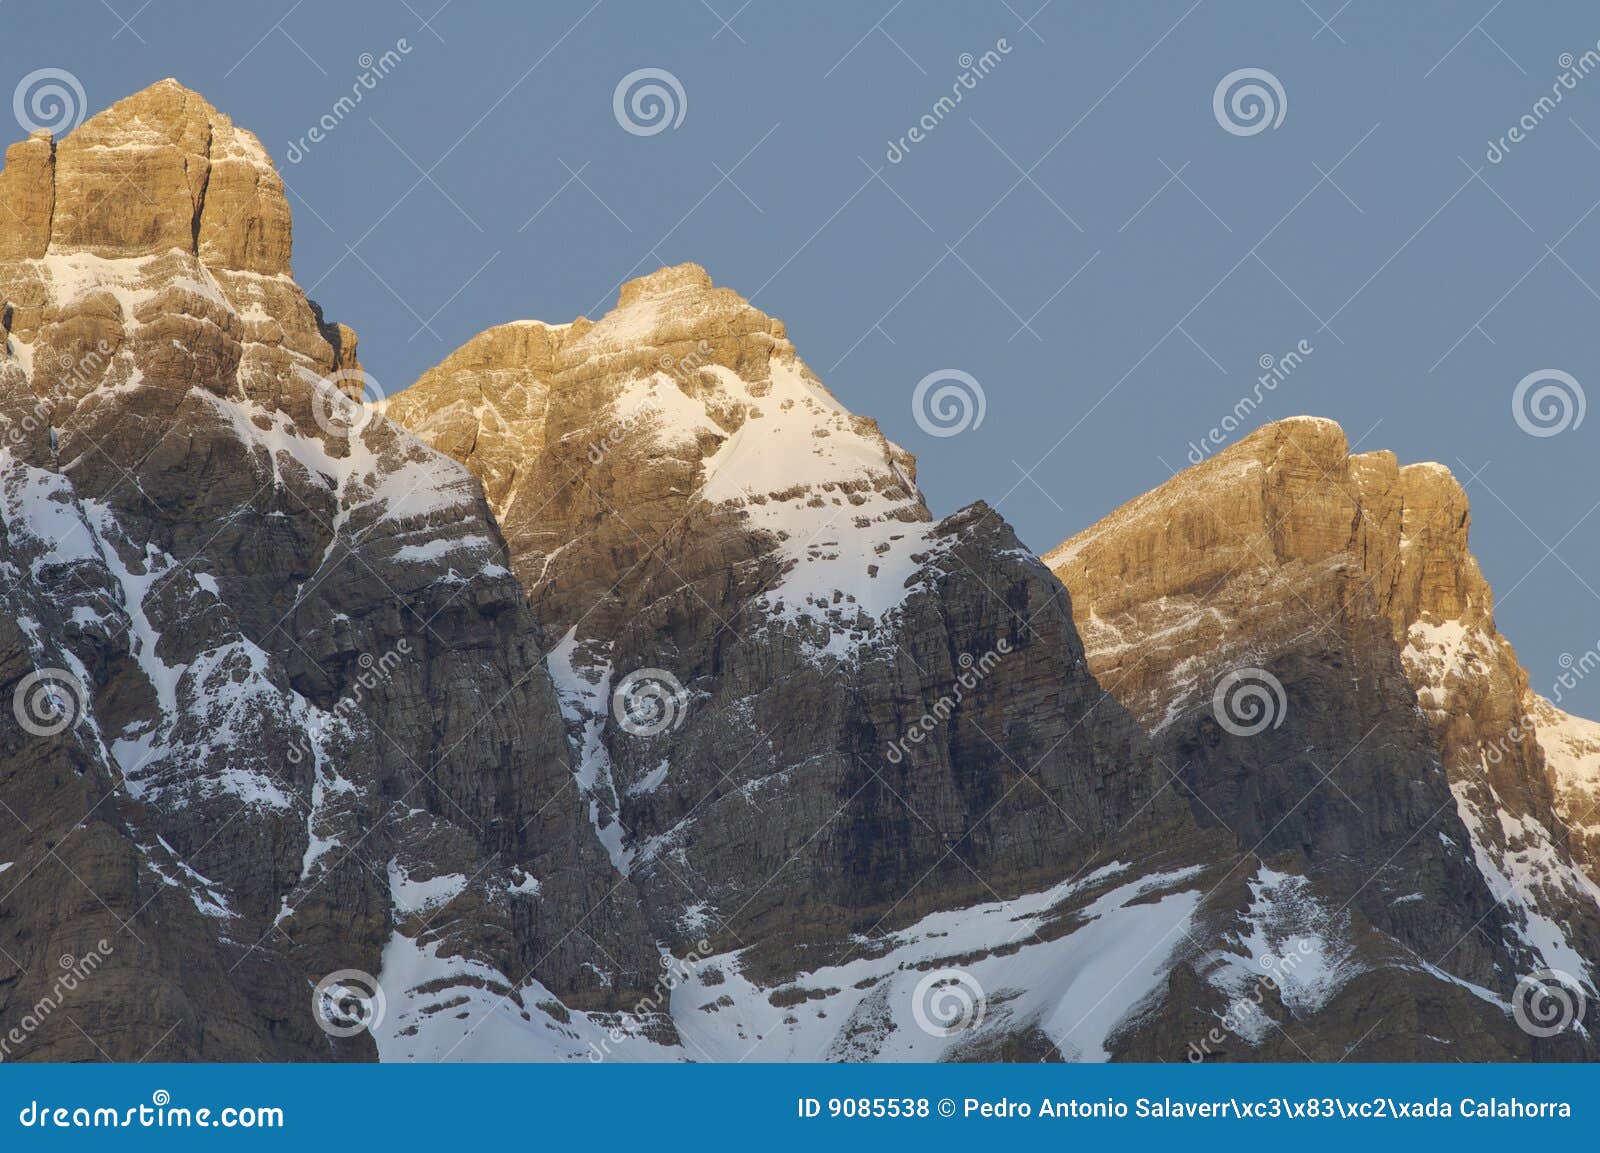 three snow-capped peaks